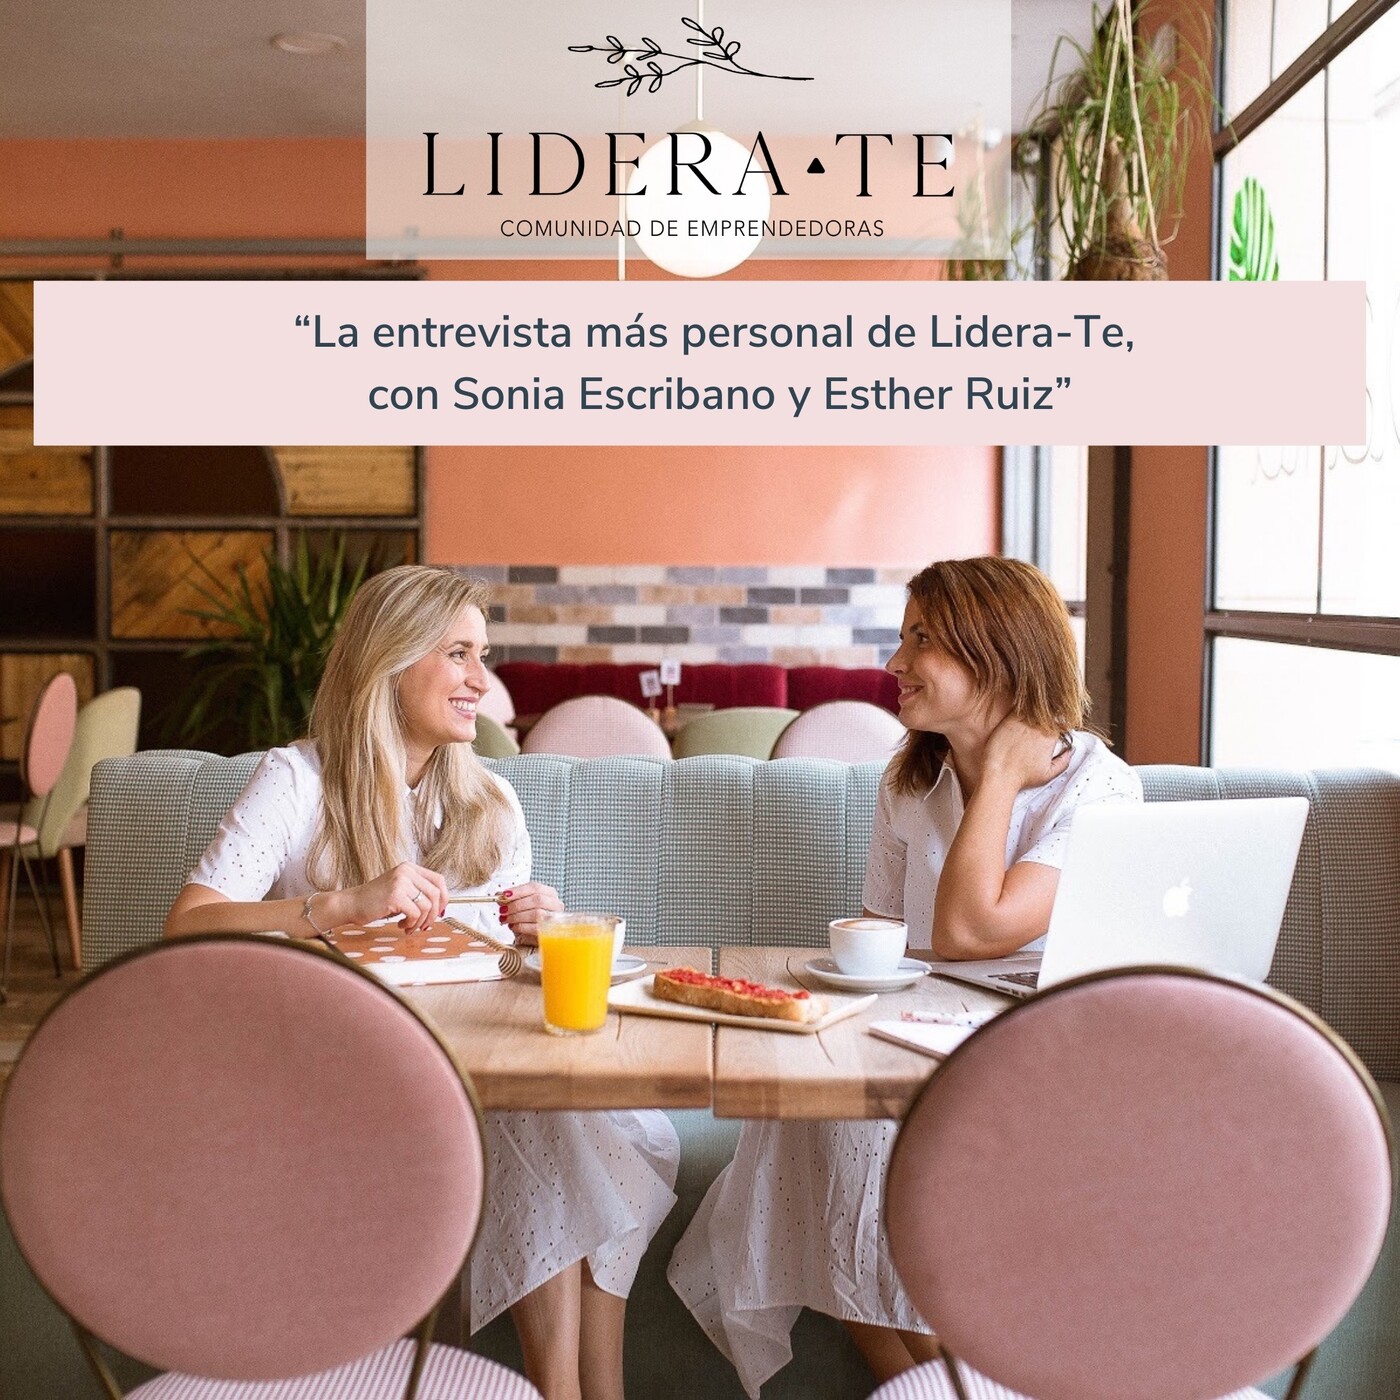 La entrevista más personal de Lidera-Te, con Sonia Escribano y Esther Ruíz.